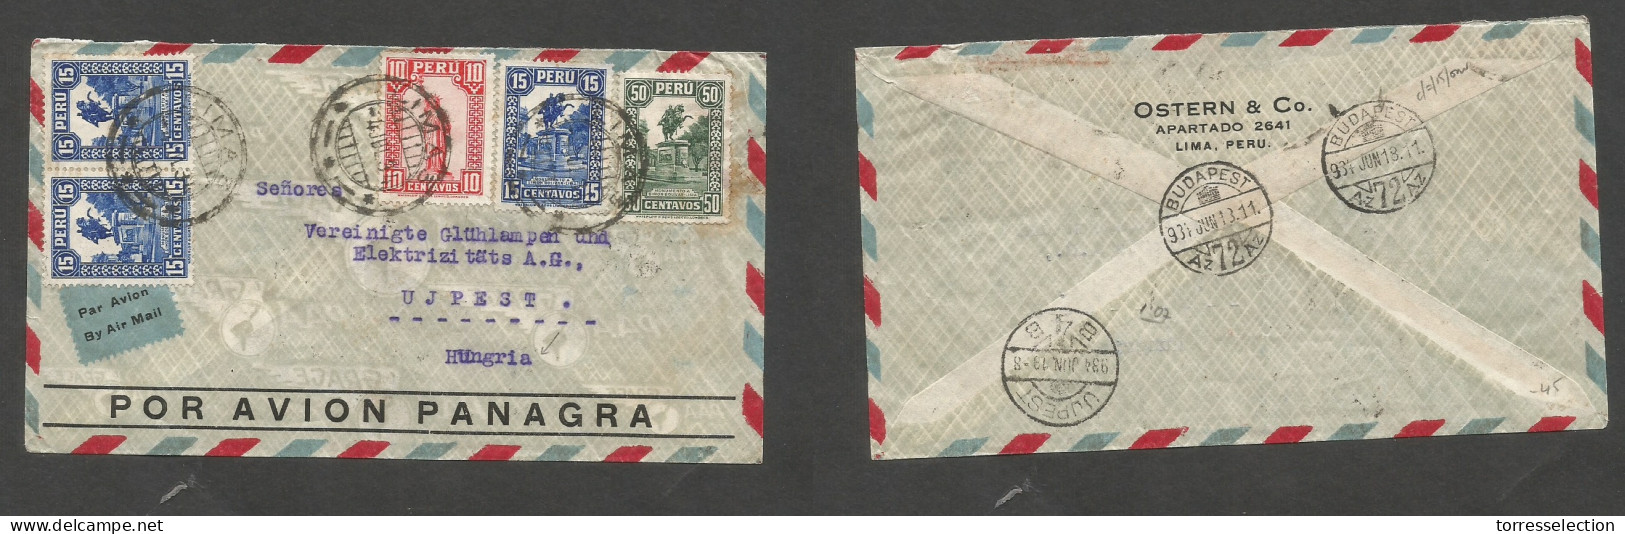 PERU. 1934 (4 June) Lima - Hungary, Ujpest (13 June) Air Multifkd Env, At 1,05 Ps Rate. VF + Air Label. - Pérou